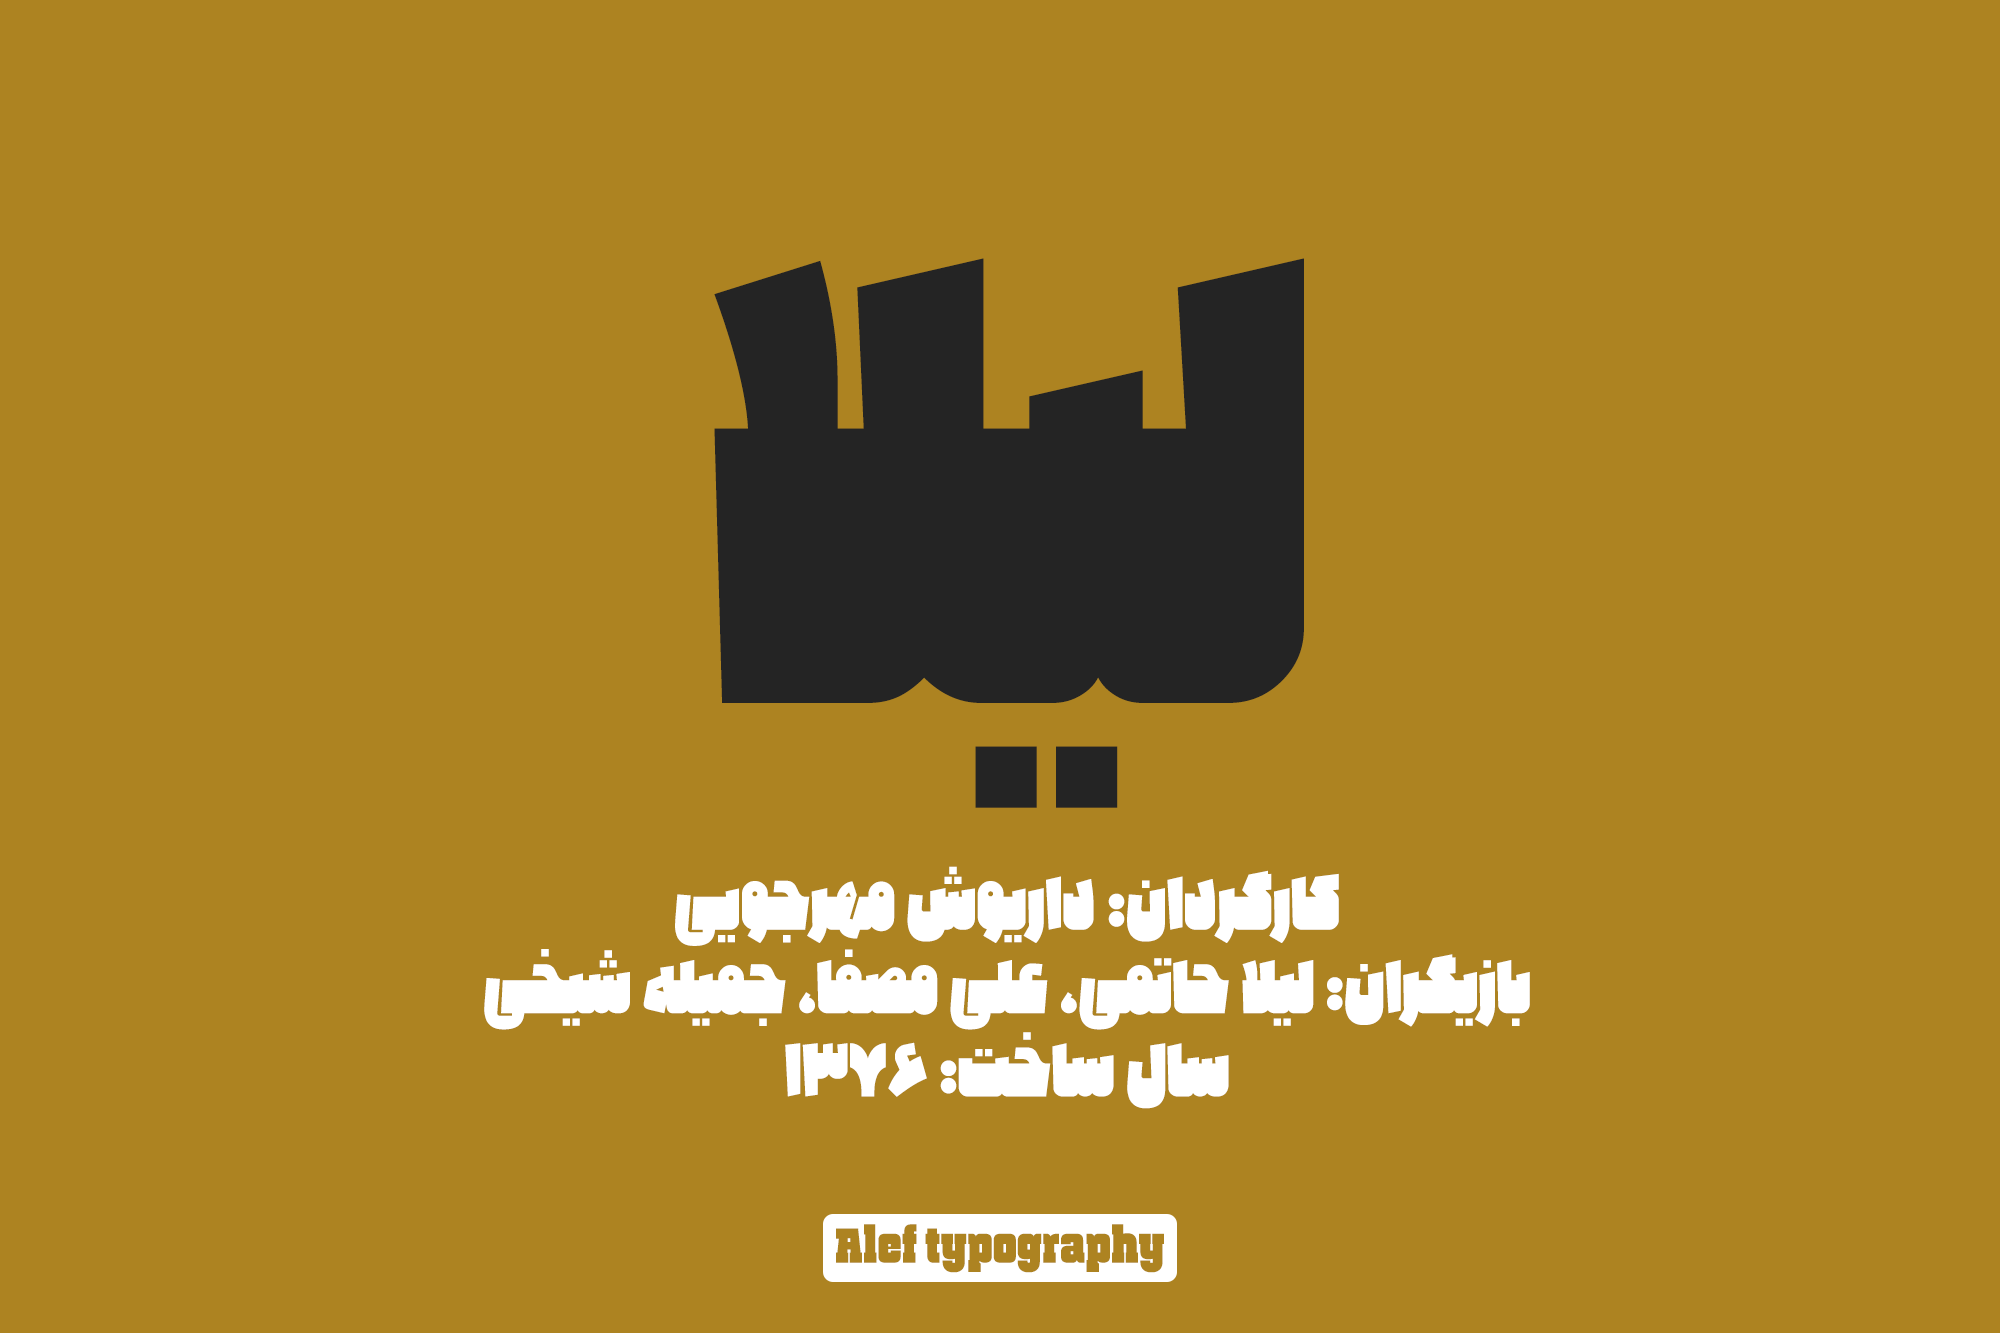 Alef-typography06